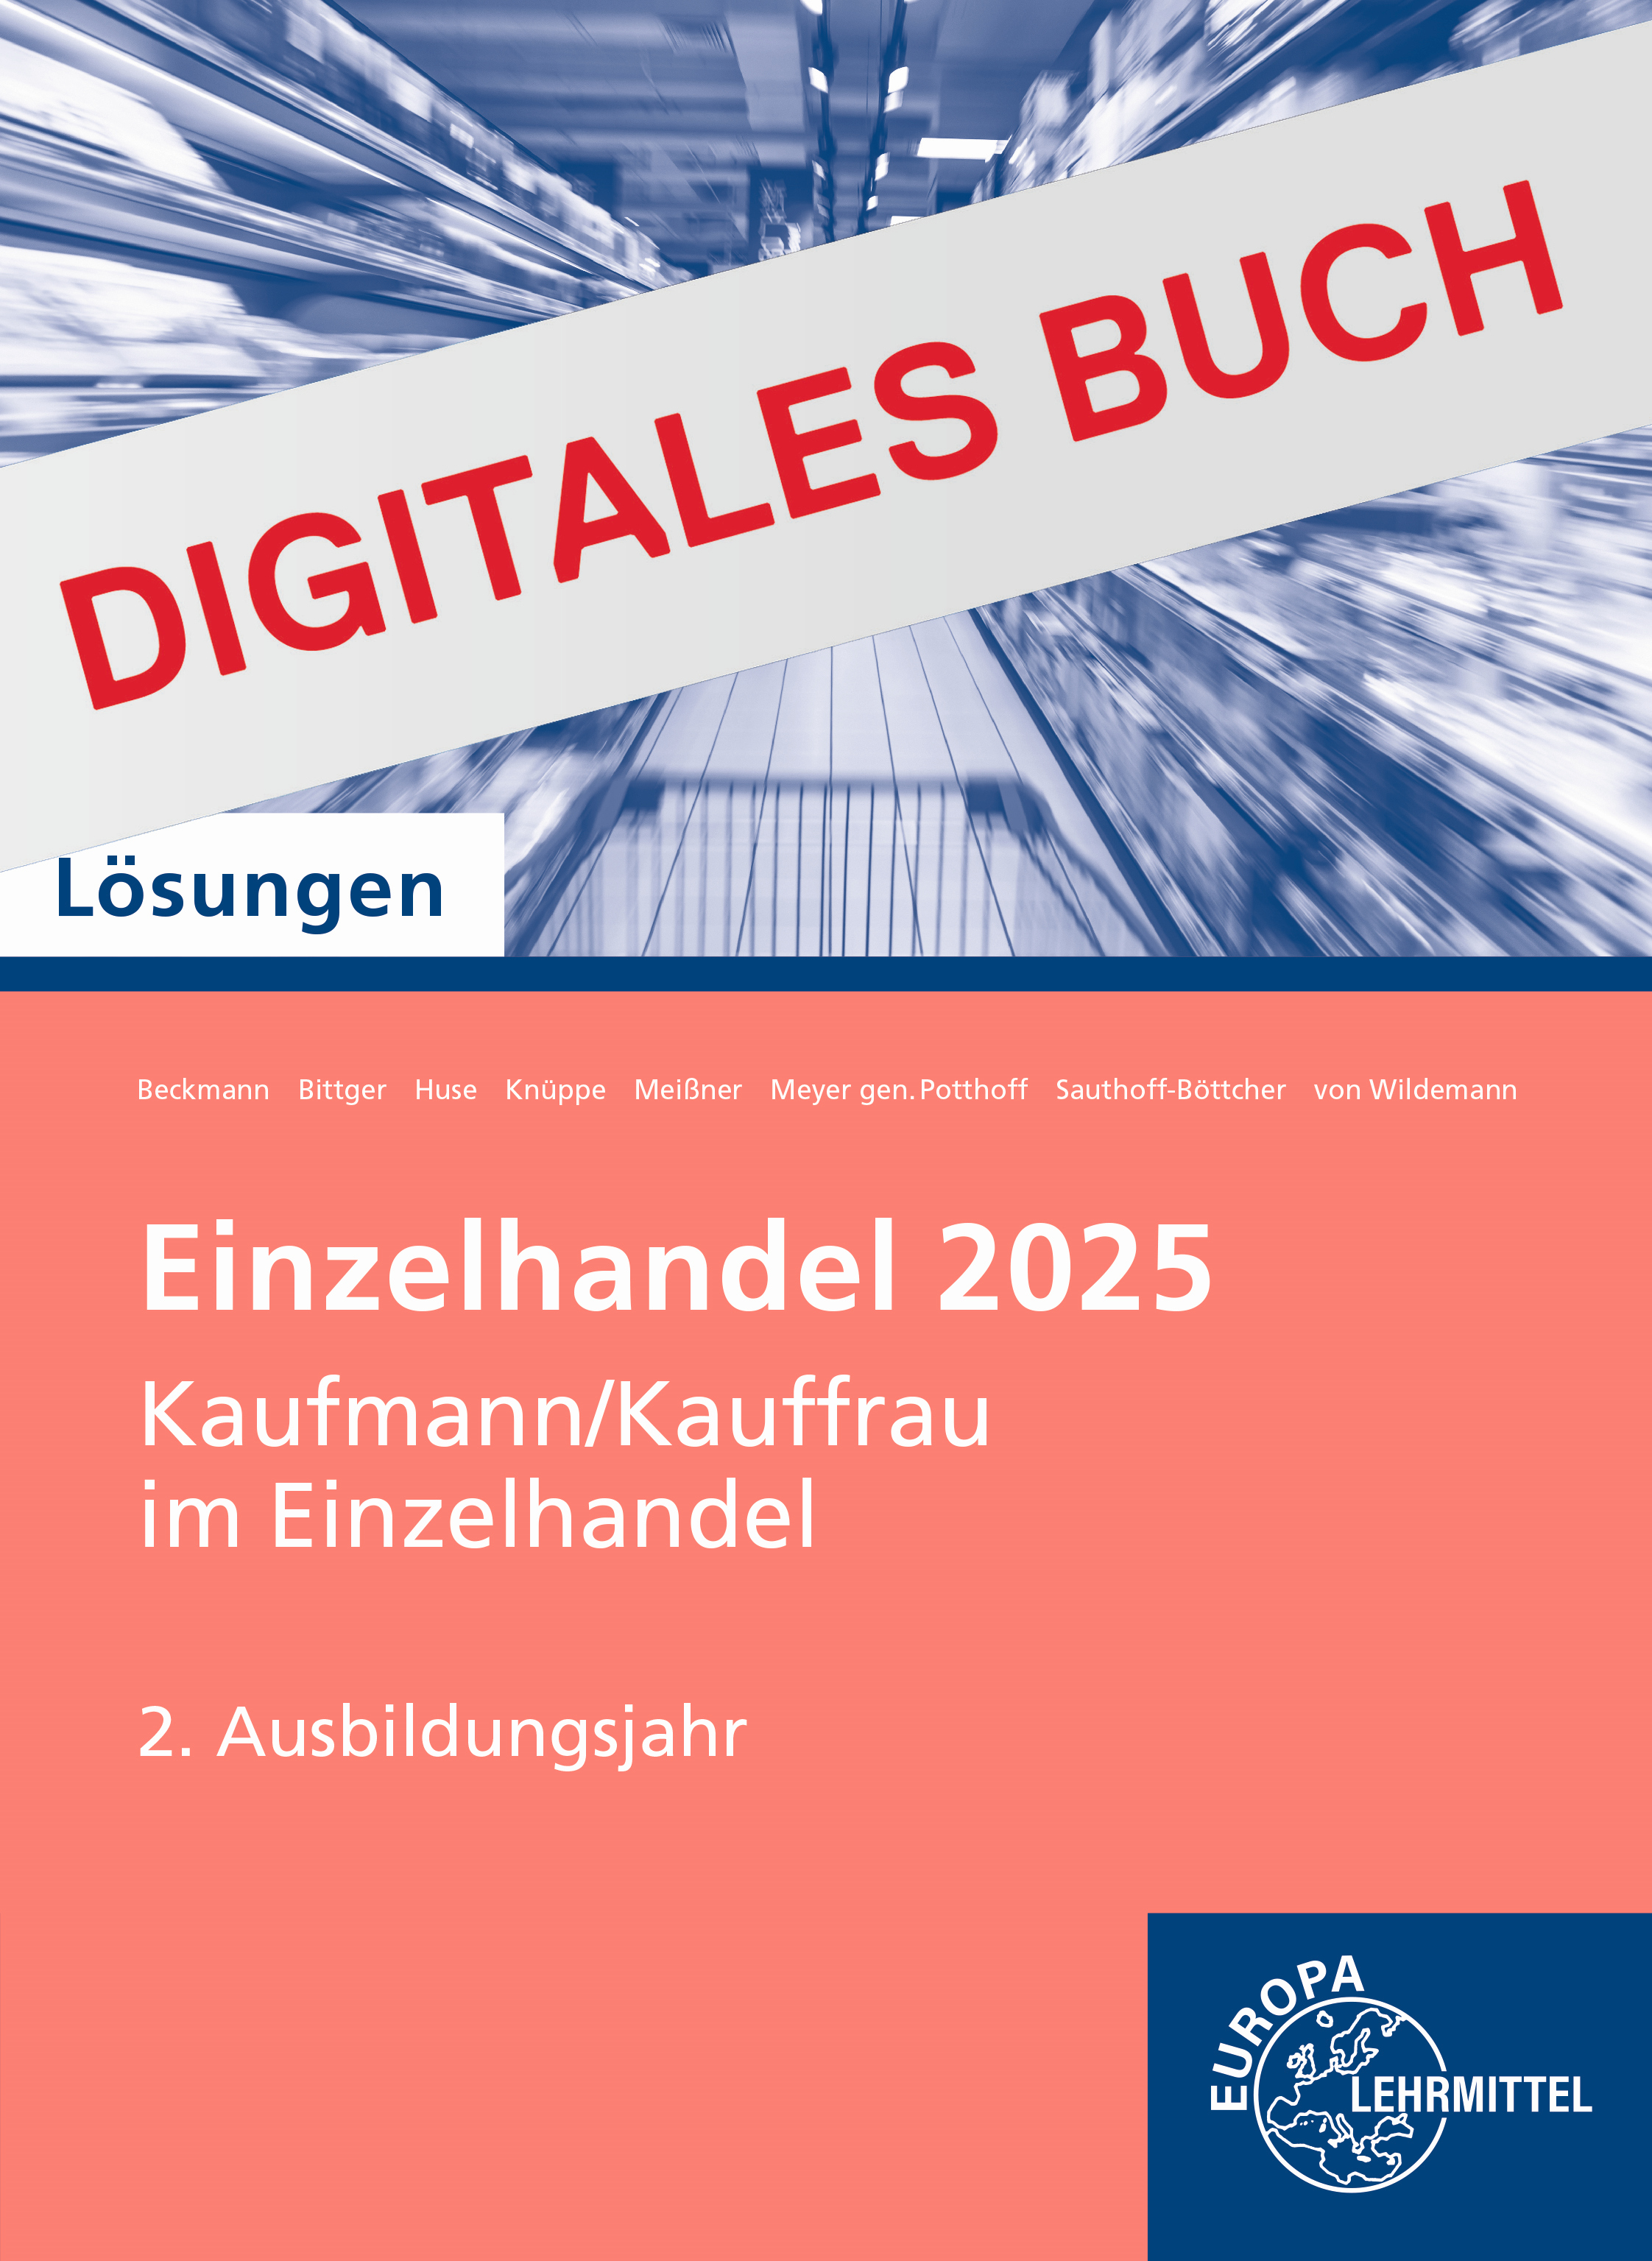 Lösungen Einzelhandel 2025, 2. Ausbildungsjahr - Digitales Buch